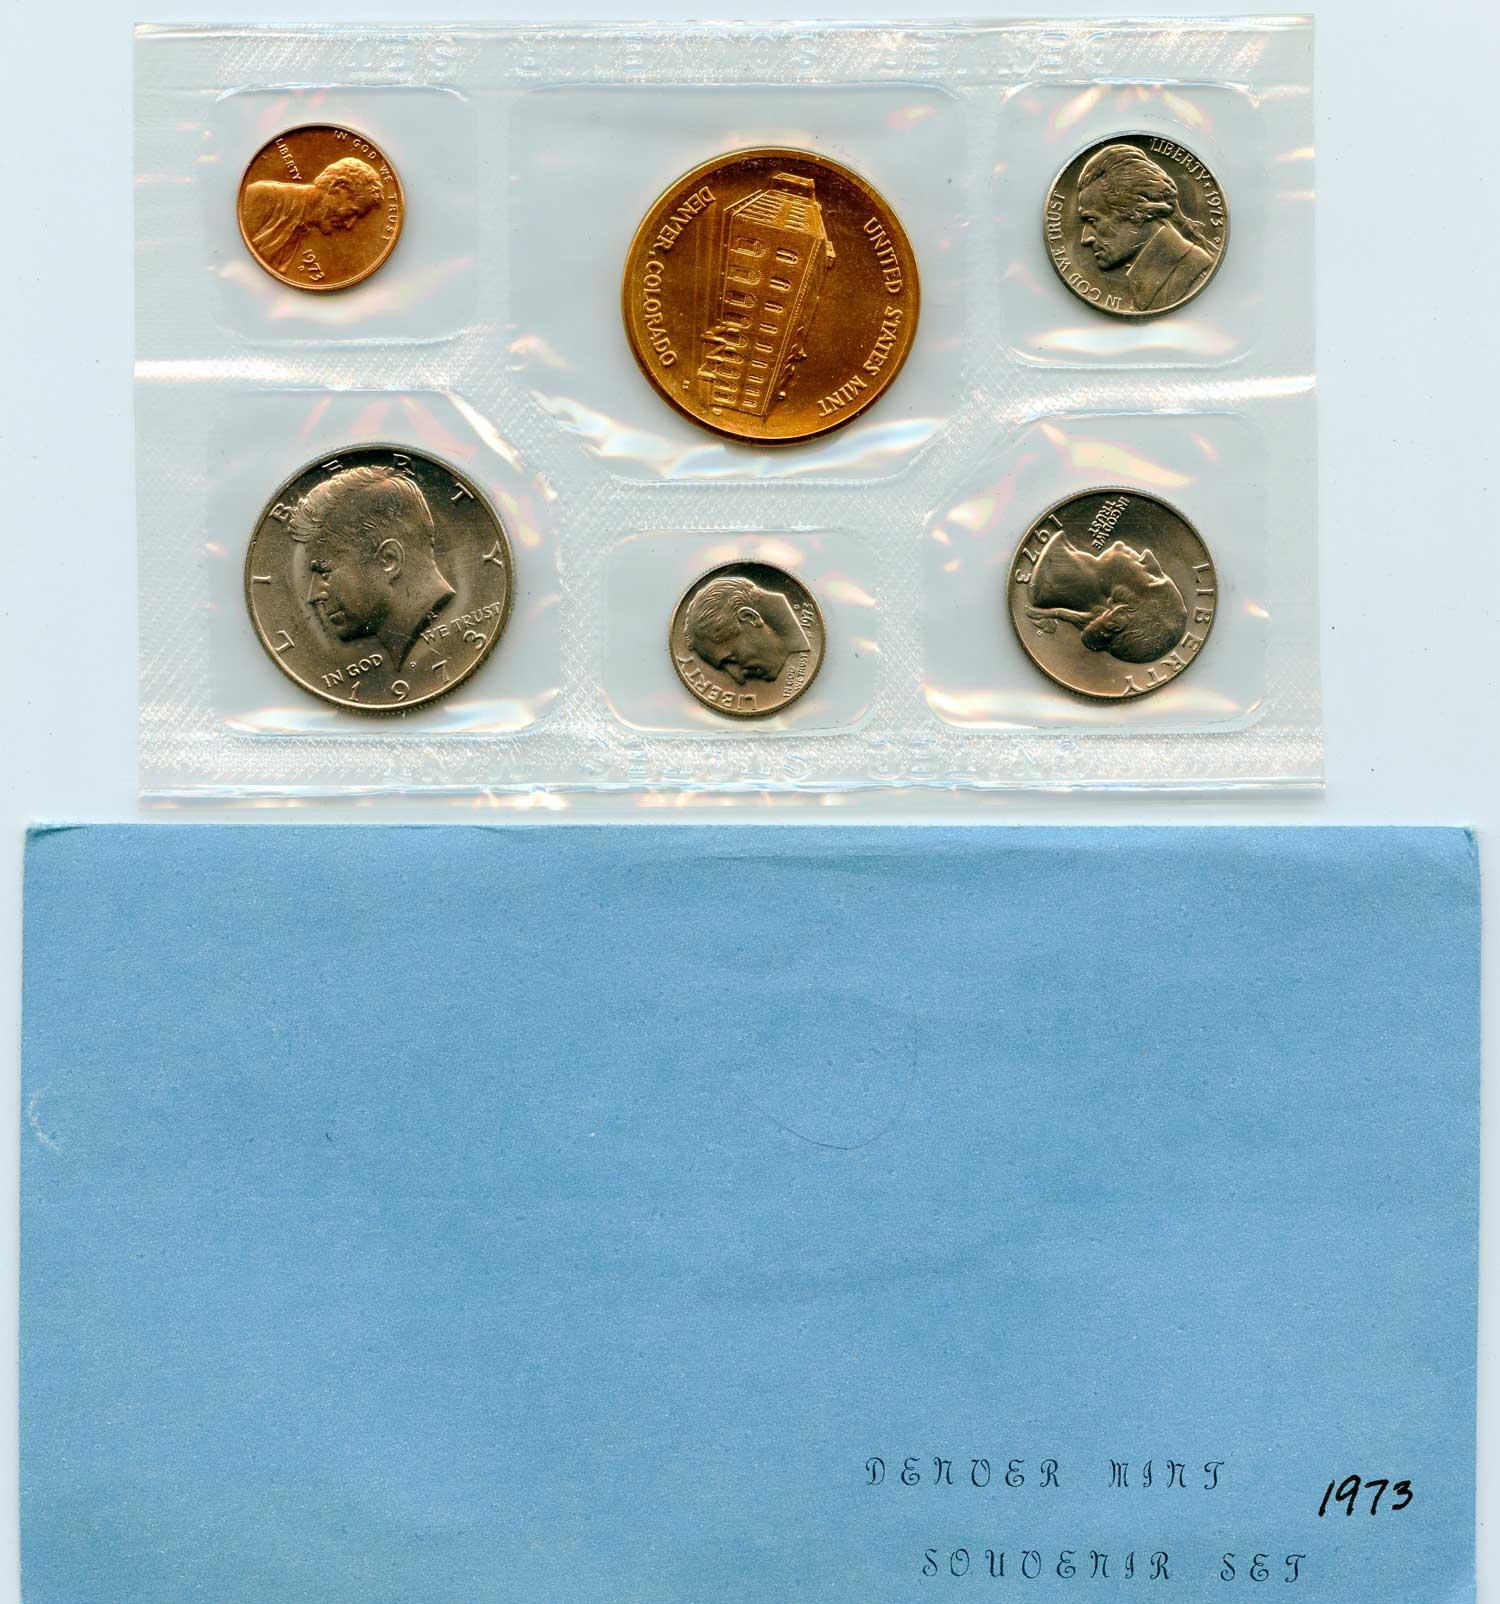 1973 Denver Mint Souvenir Set